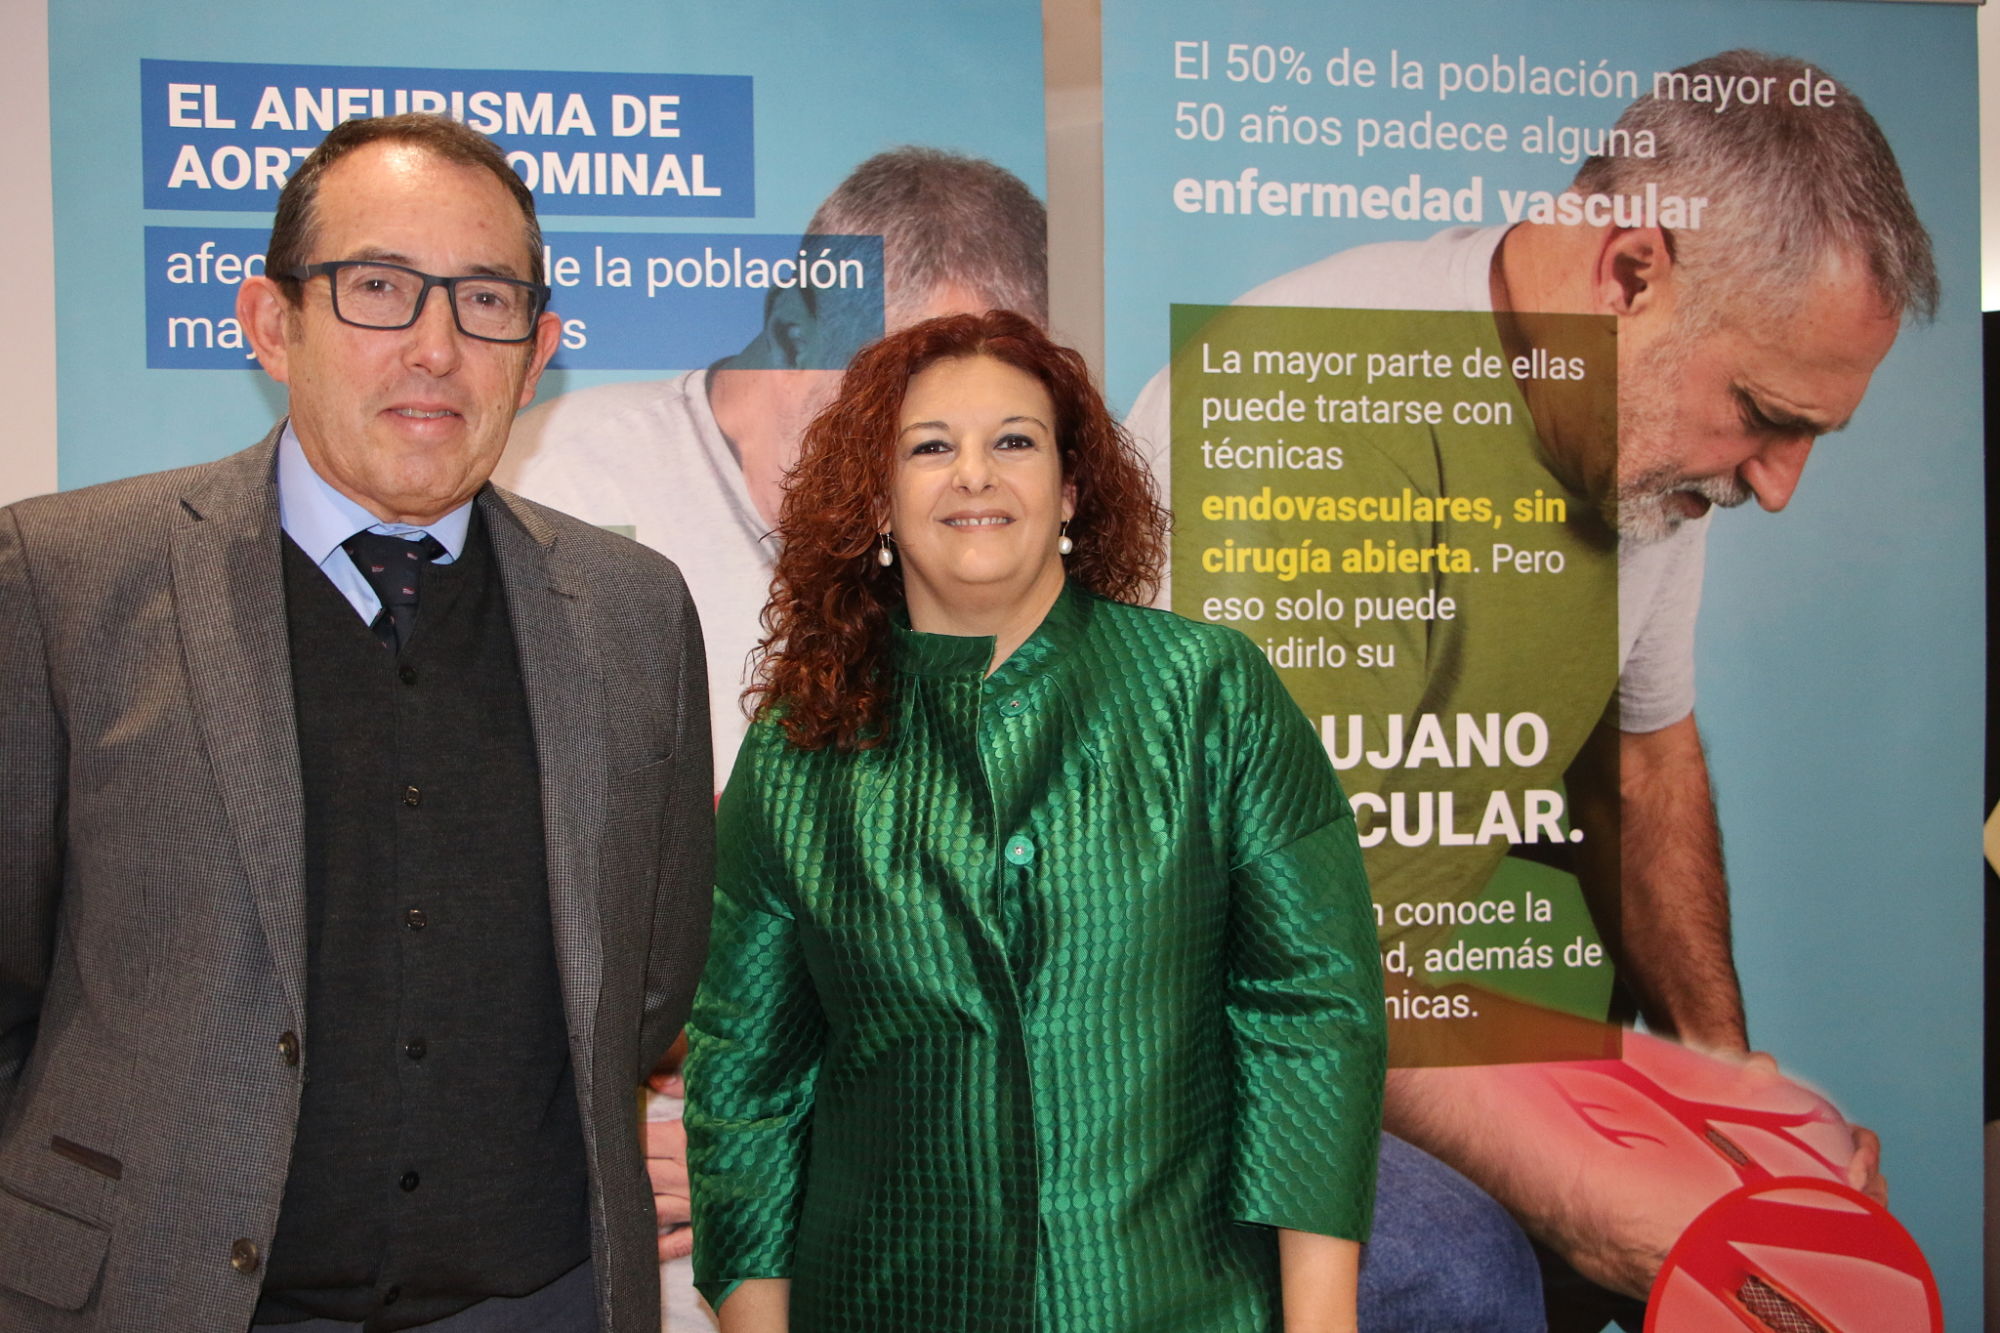 NOTA DE PRENSA: Llega a la estación de Alicante una campaña que advierte sobre el desconocimiento de las patologías vasculares